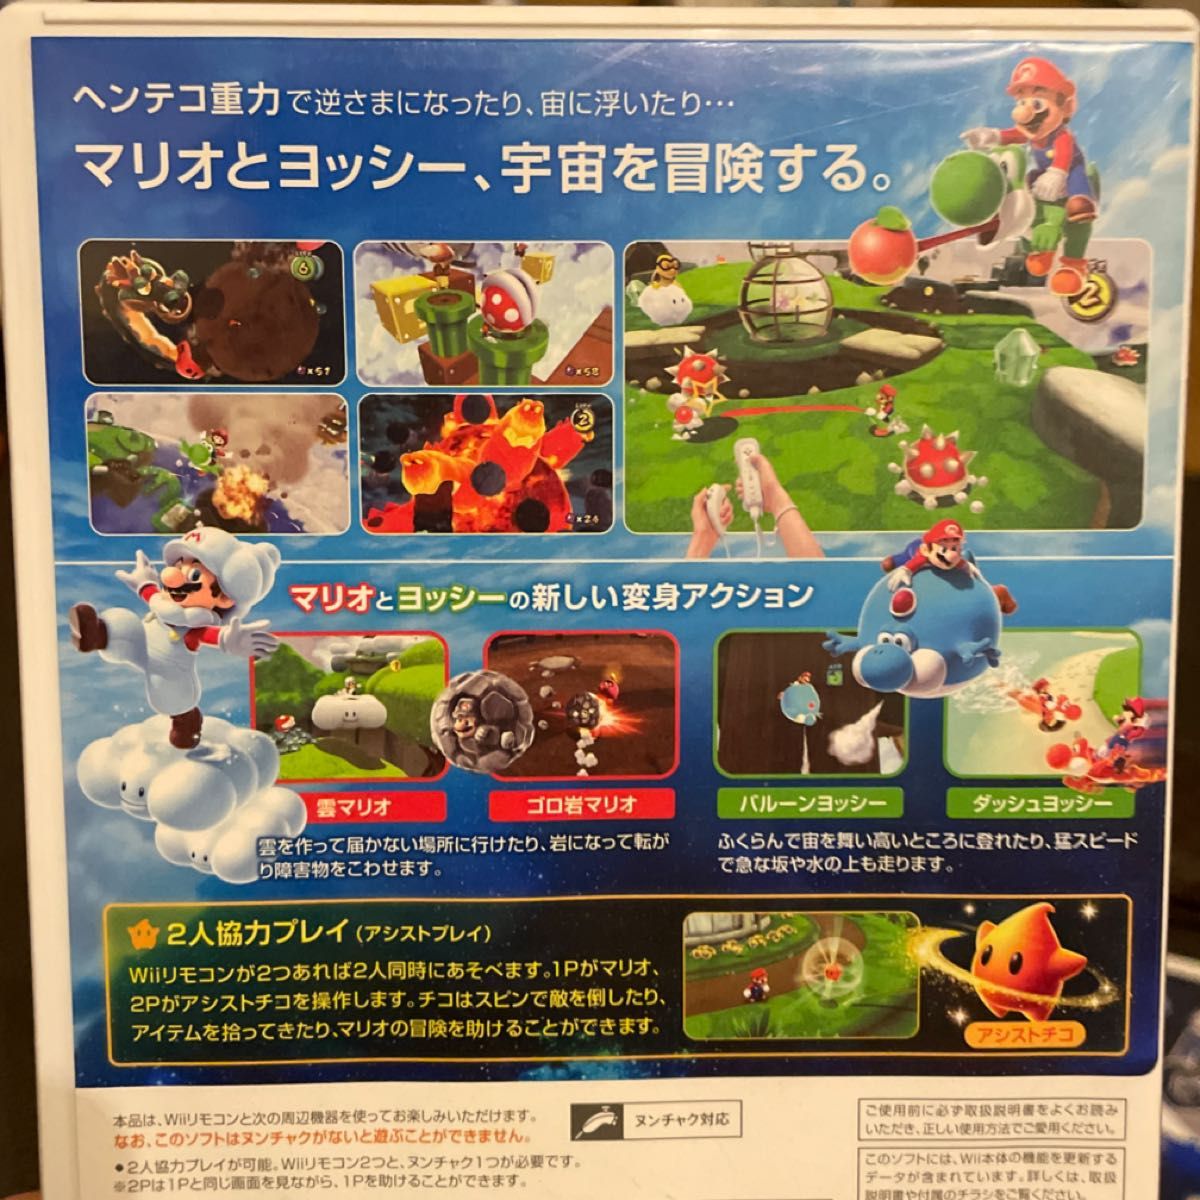 【Wii】 スーパーマリオギャラクシー スーパーマリオギャラクシー2 おまけDVD セット まとめ売り